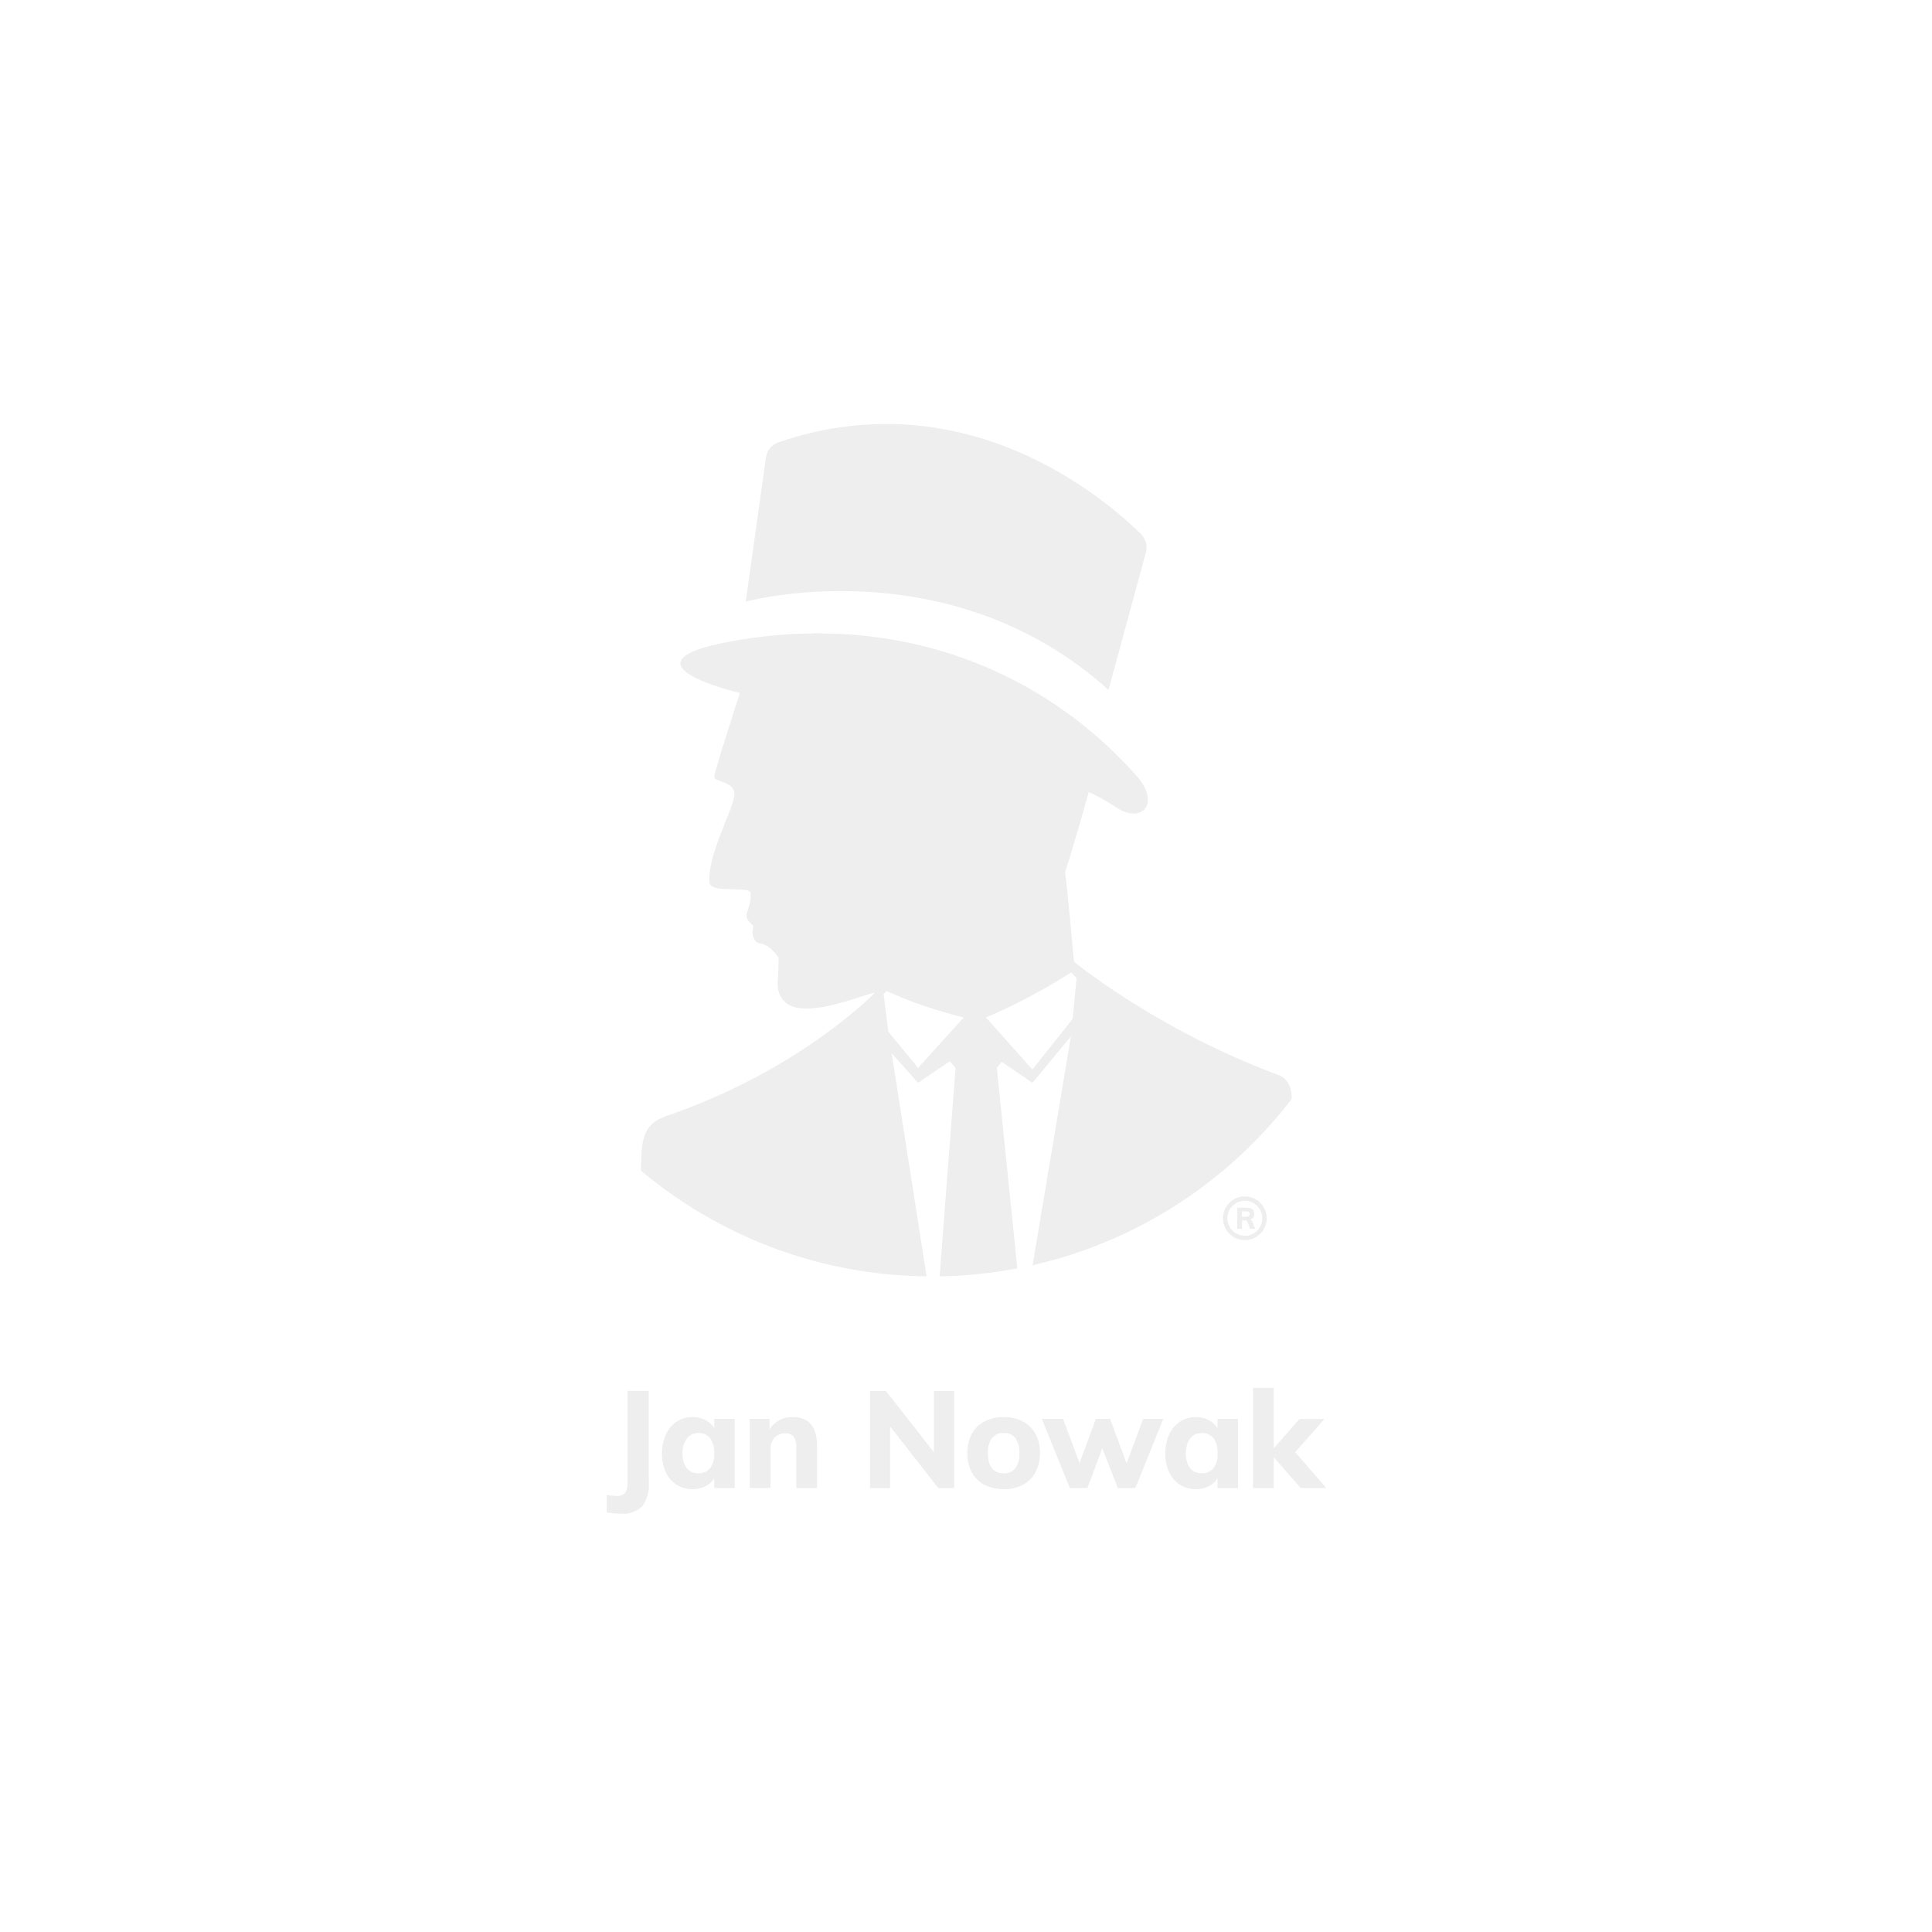 JAN NOWAK model ERIC stół warsztatowy: antracytowo-niebieski